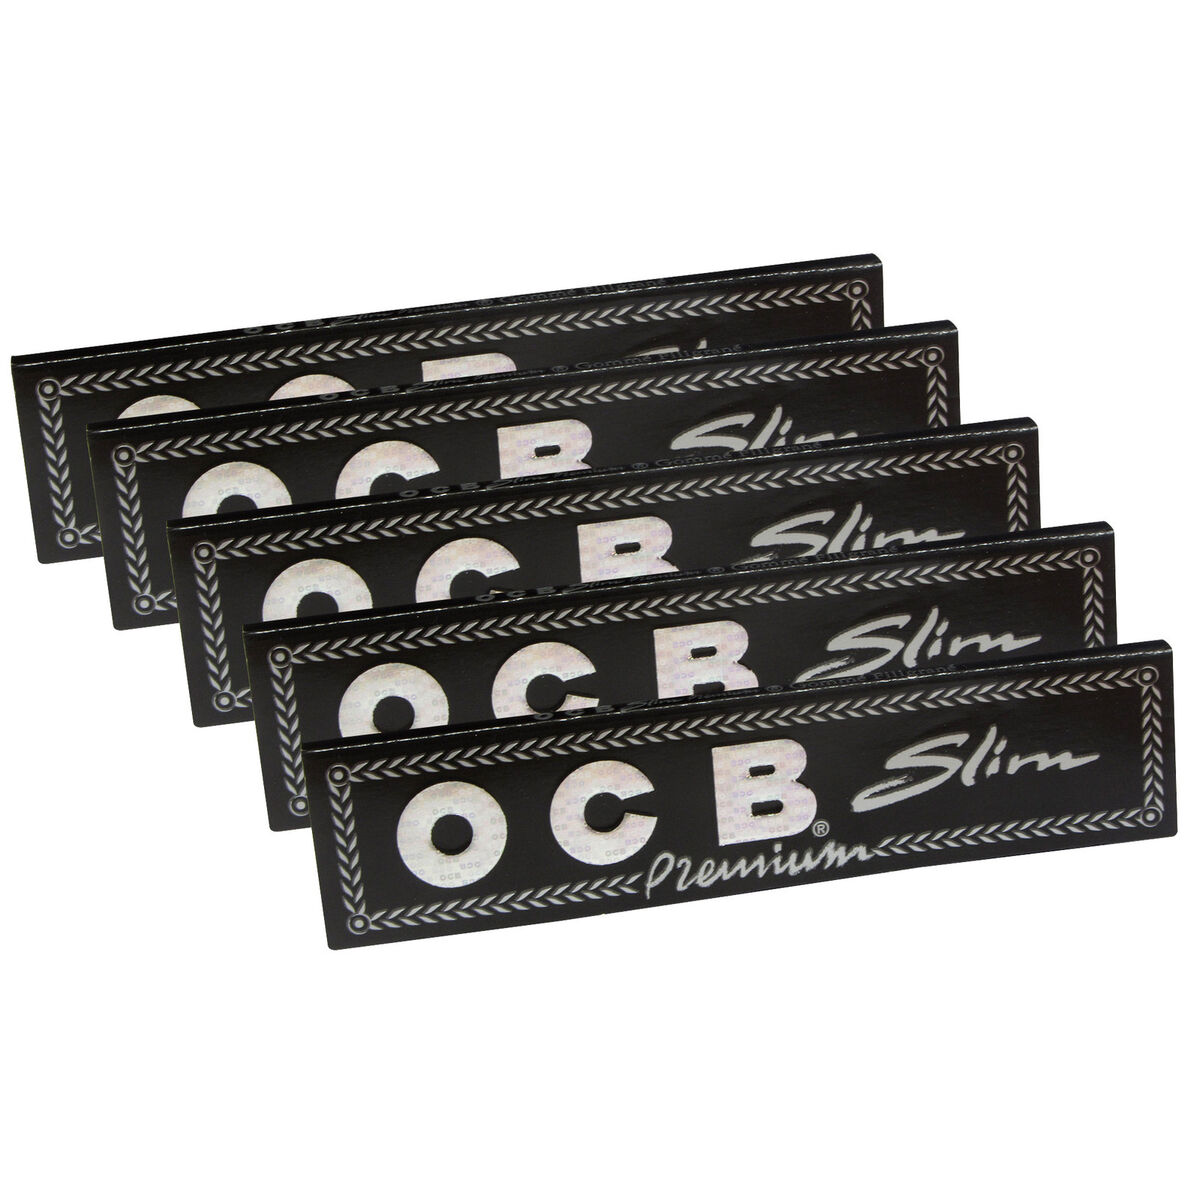 OCB - Longpapers Slim Premium